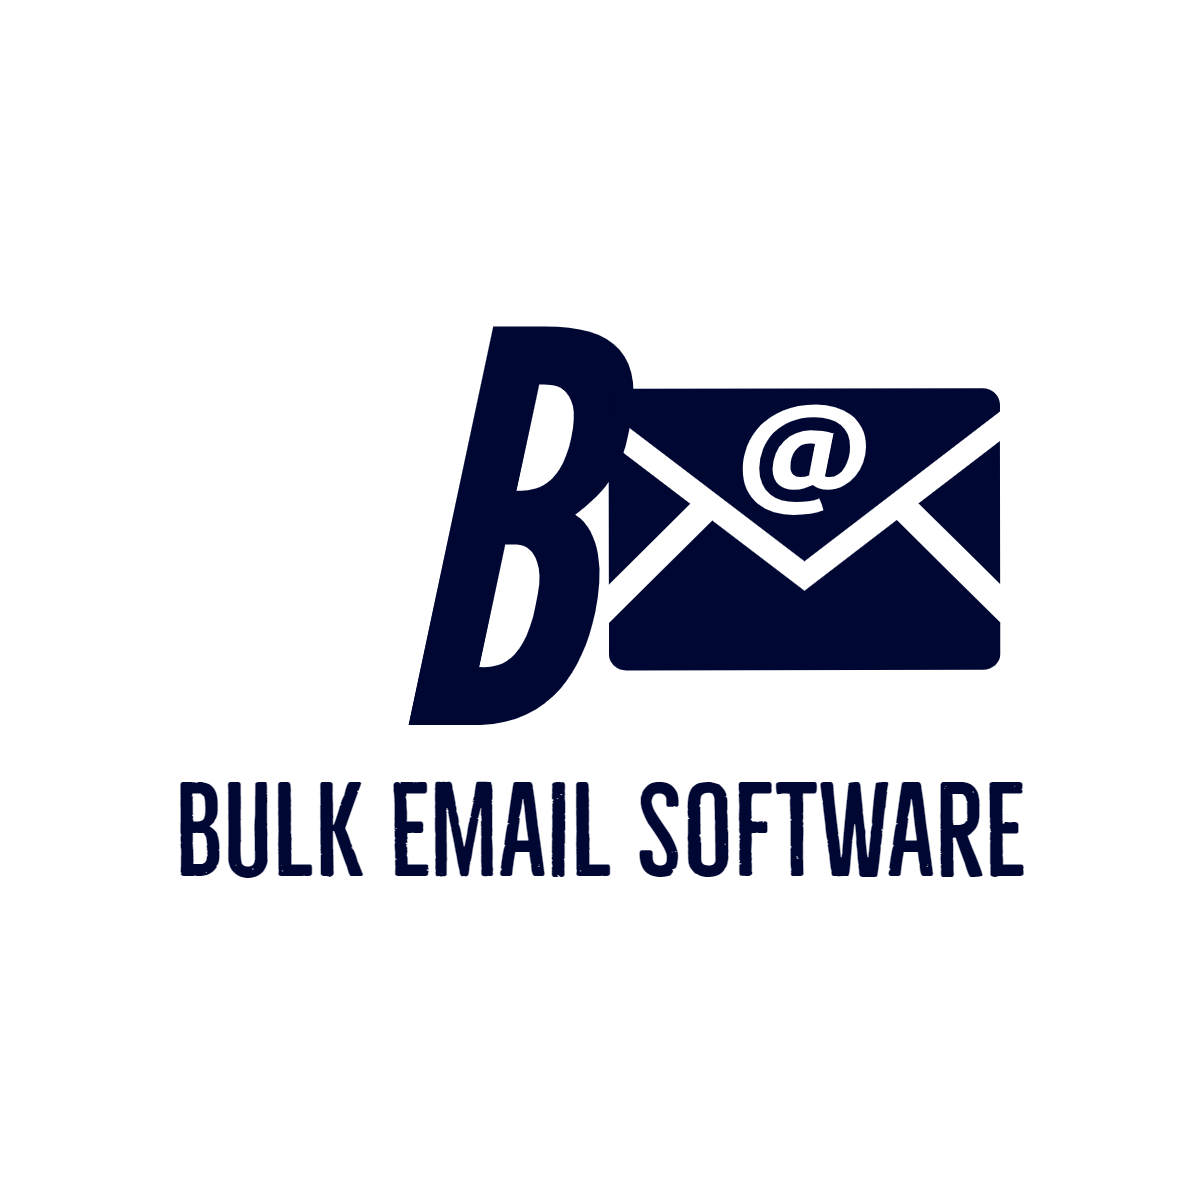 bulkemailsoft logo